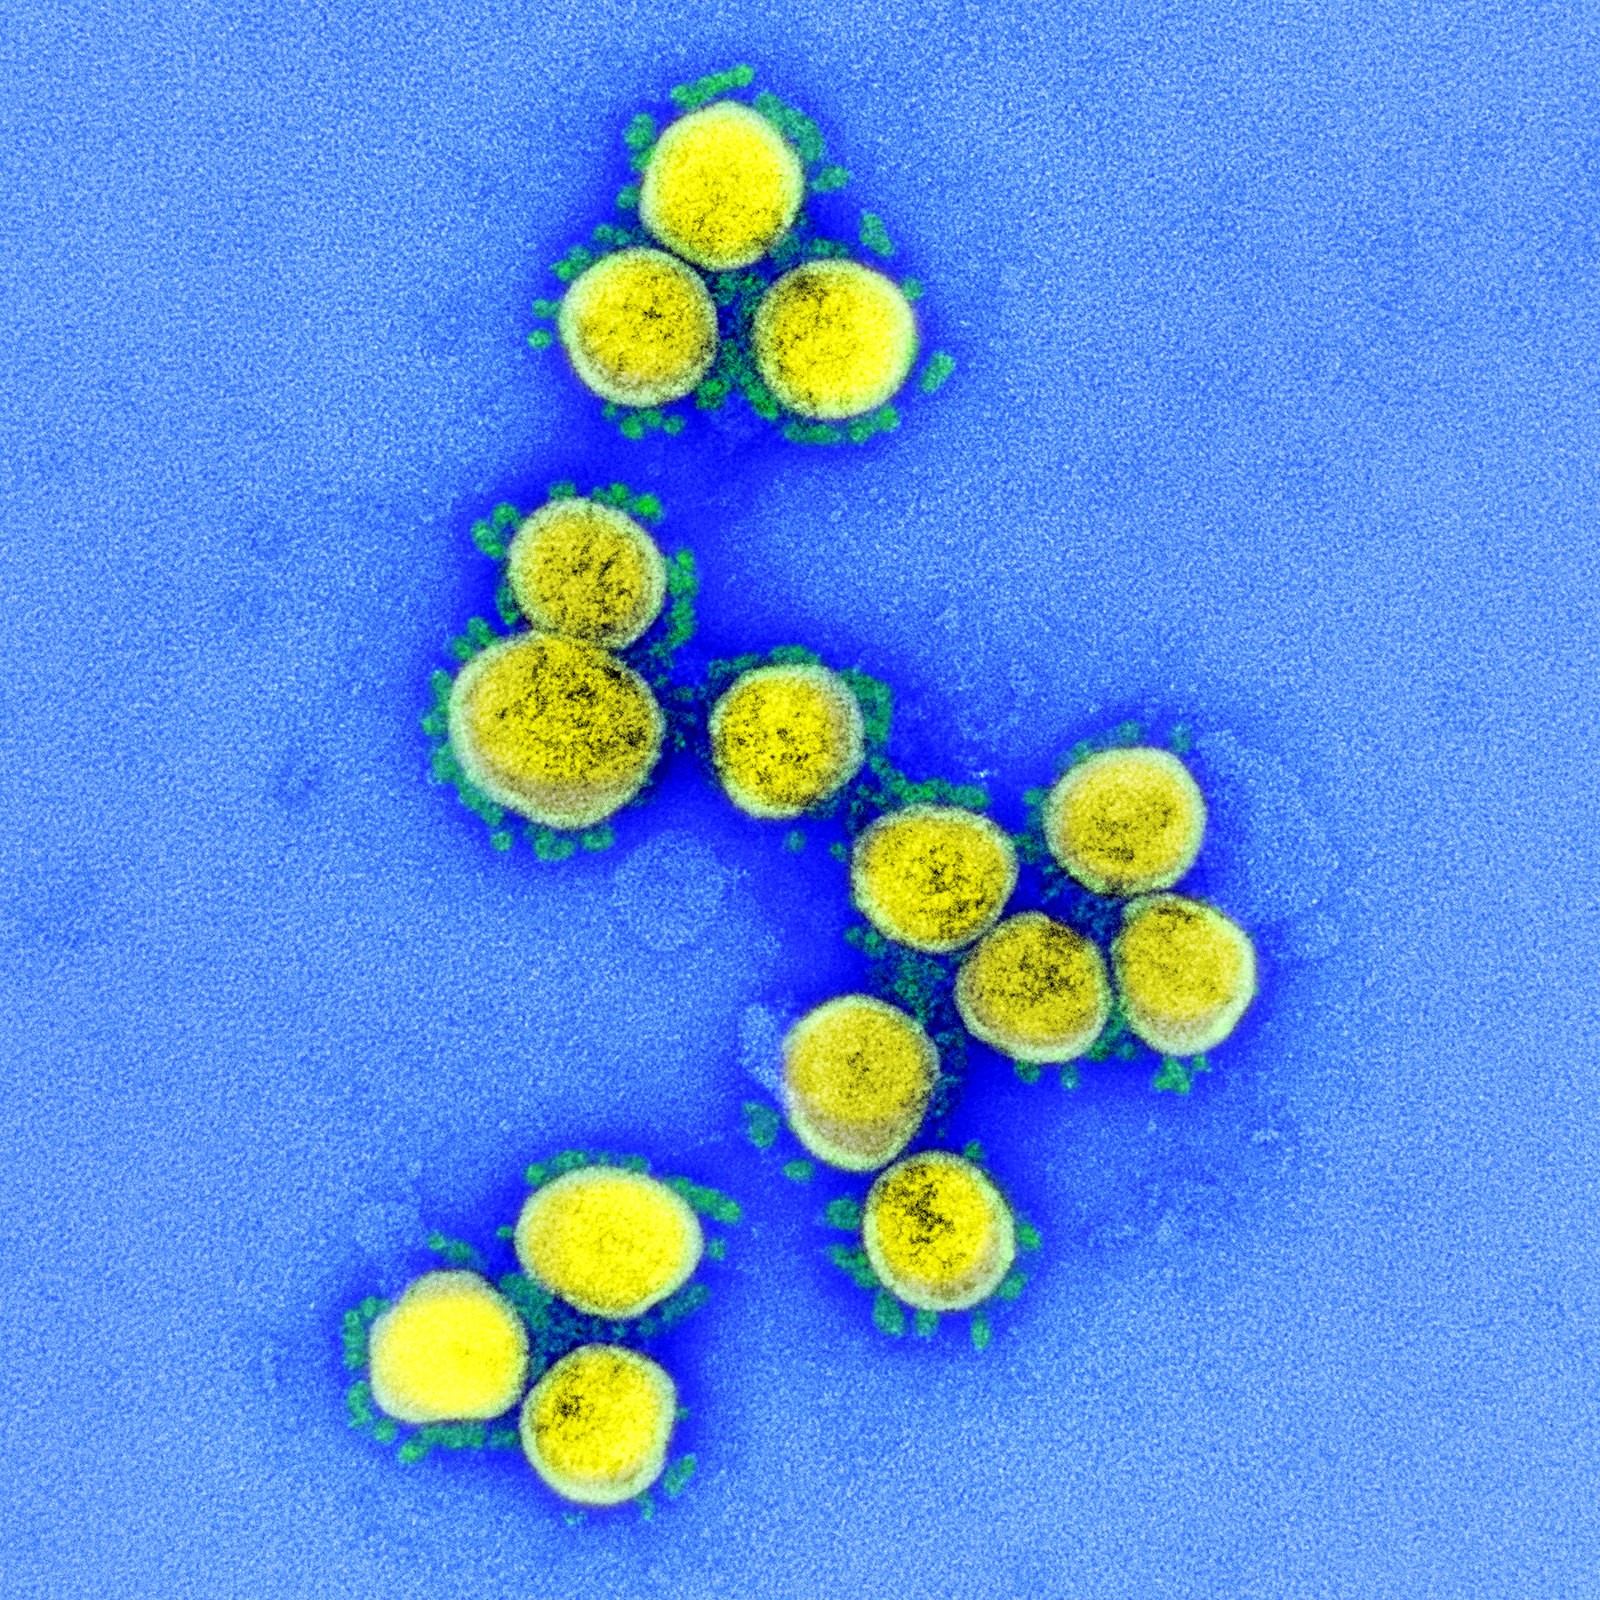 coronavírus covid-19 sars-cov-2 (Foto: NIAID)